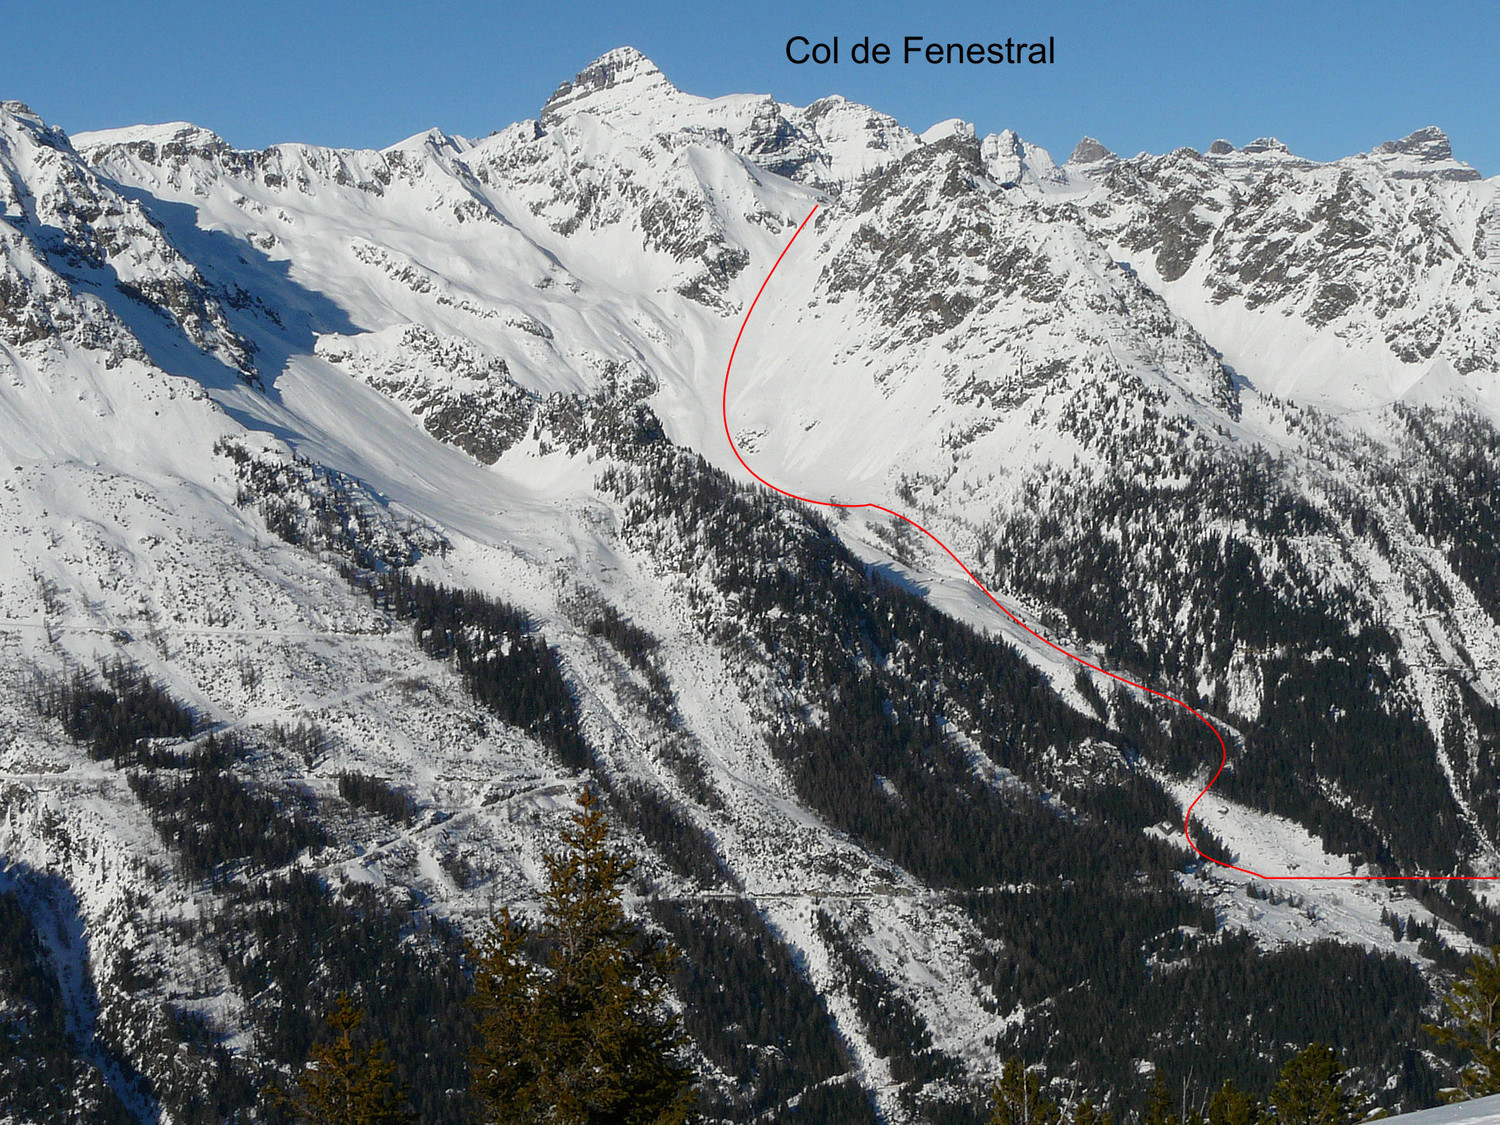 L'avalanche se serait produite du côté du col du Fenestral au-dessus de Finhaut. Un itinéraire régulièrement fréquenté comme en témoigne cette image issue du site camptocamp.org